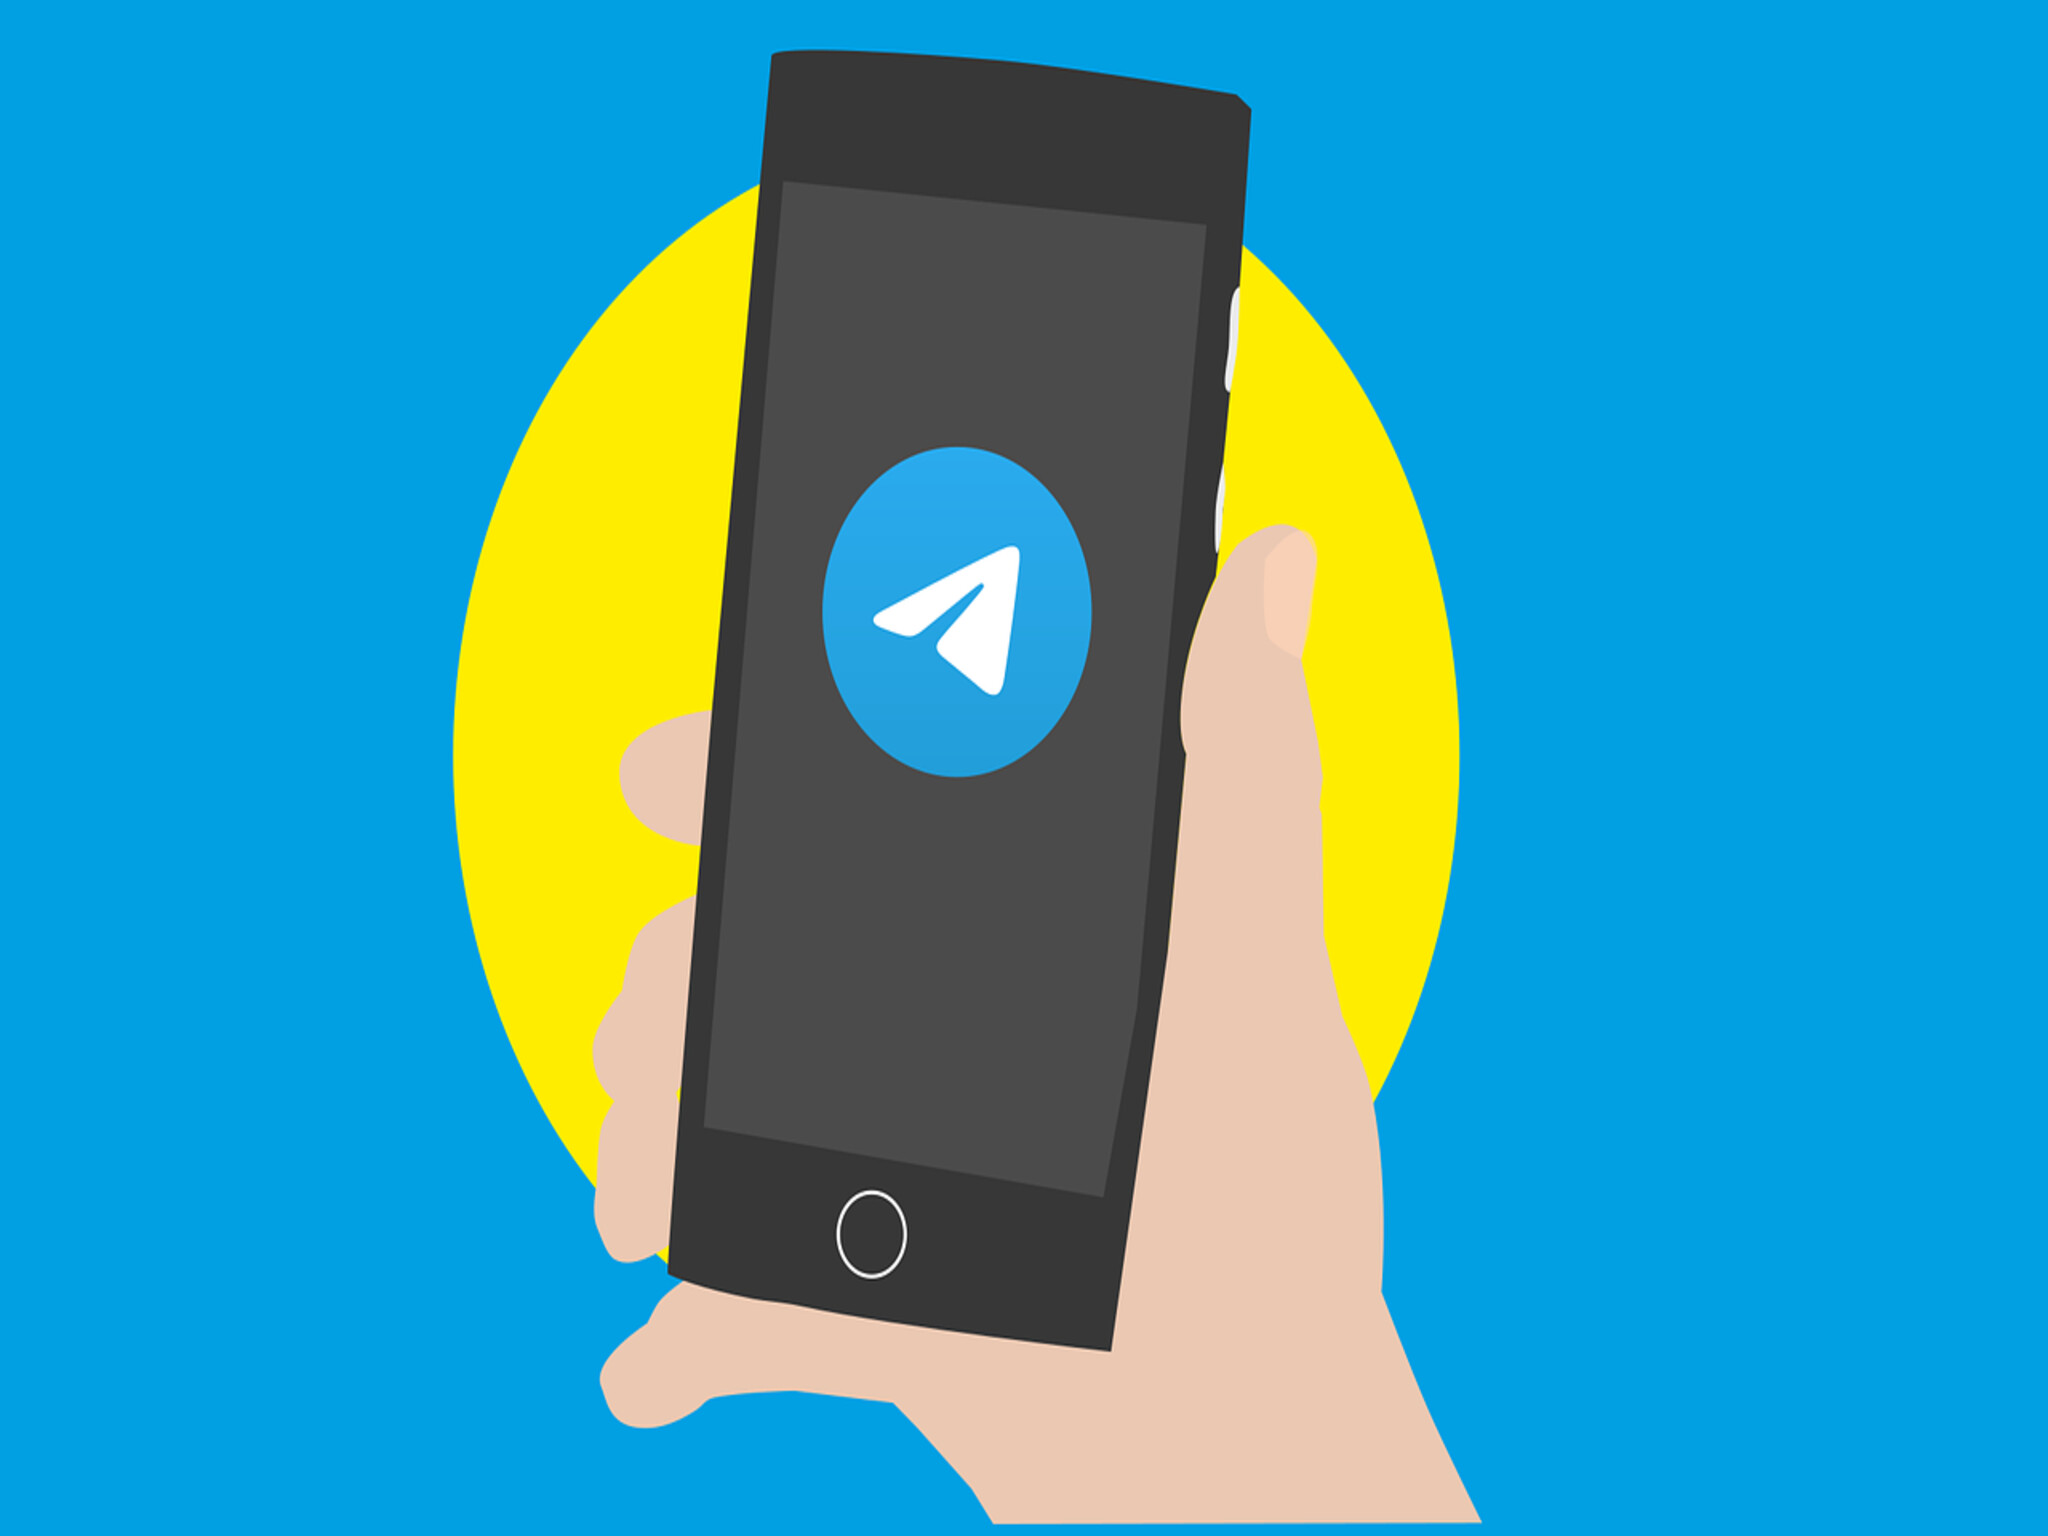 إرتفاع عدد مستخدمي تطبيق "تليجرام" إلى أكثر من 900 مليون مستخدم